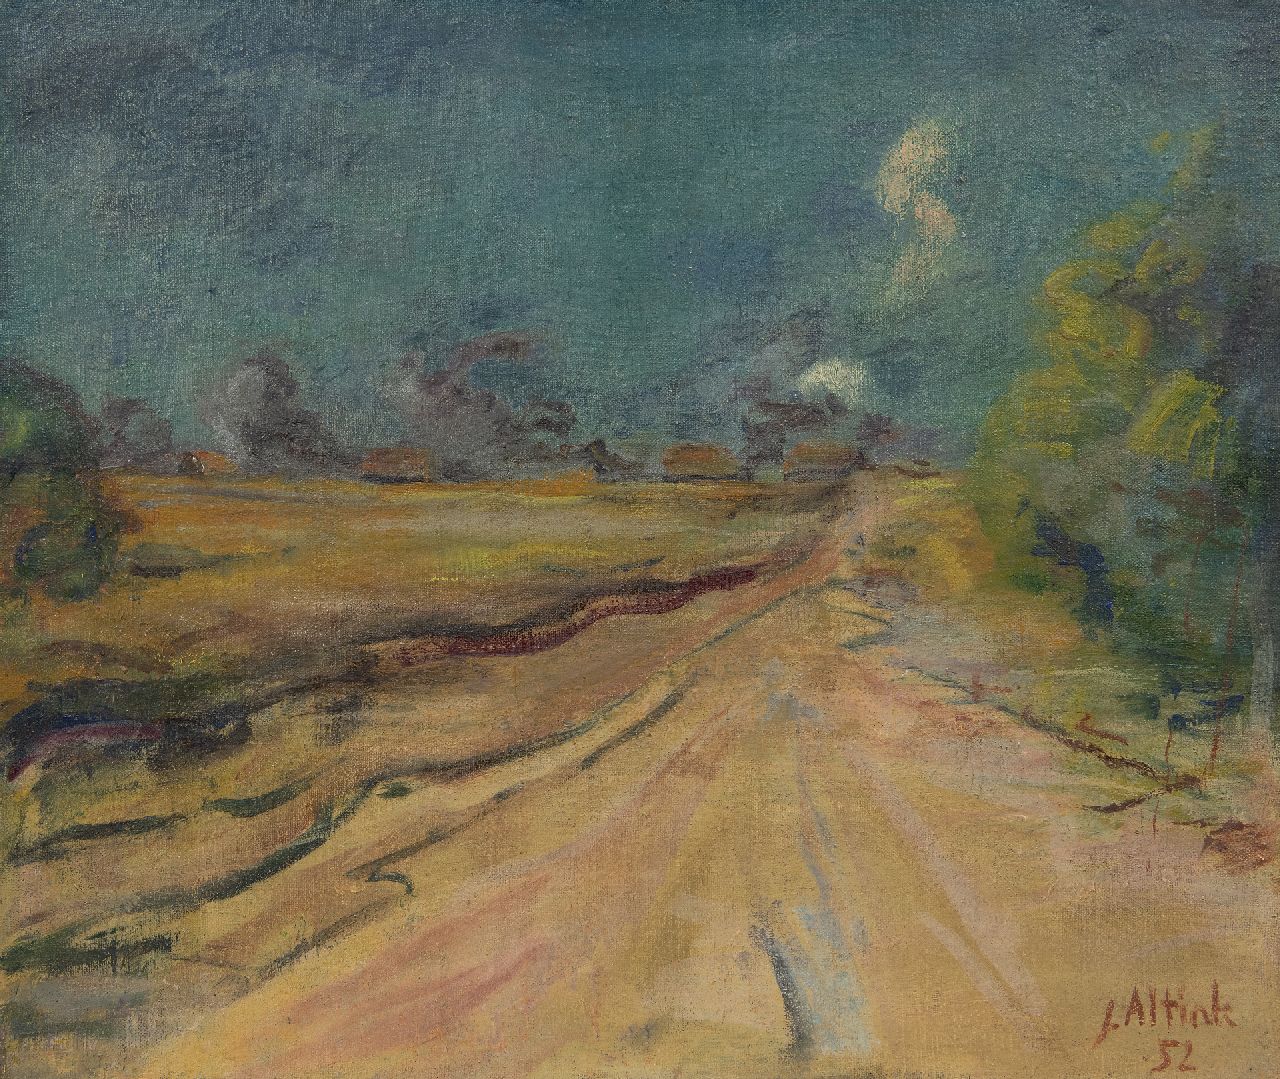 Altink J.  | Jan Altink | Schilderijen te koop aangeboden | Zomerse landweg, olieverf op doek 50,3 x 60,1 cm, gesigneerd rechtsonder en gedateerd '52